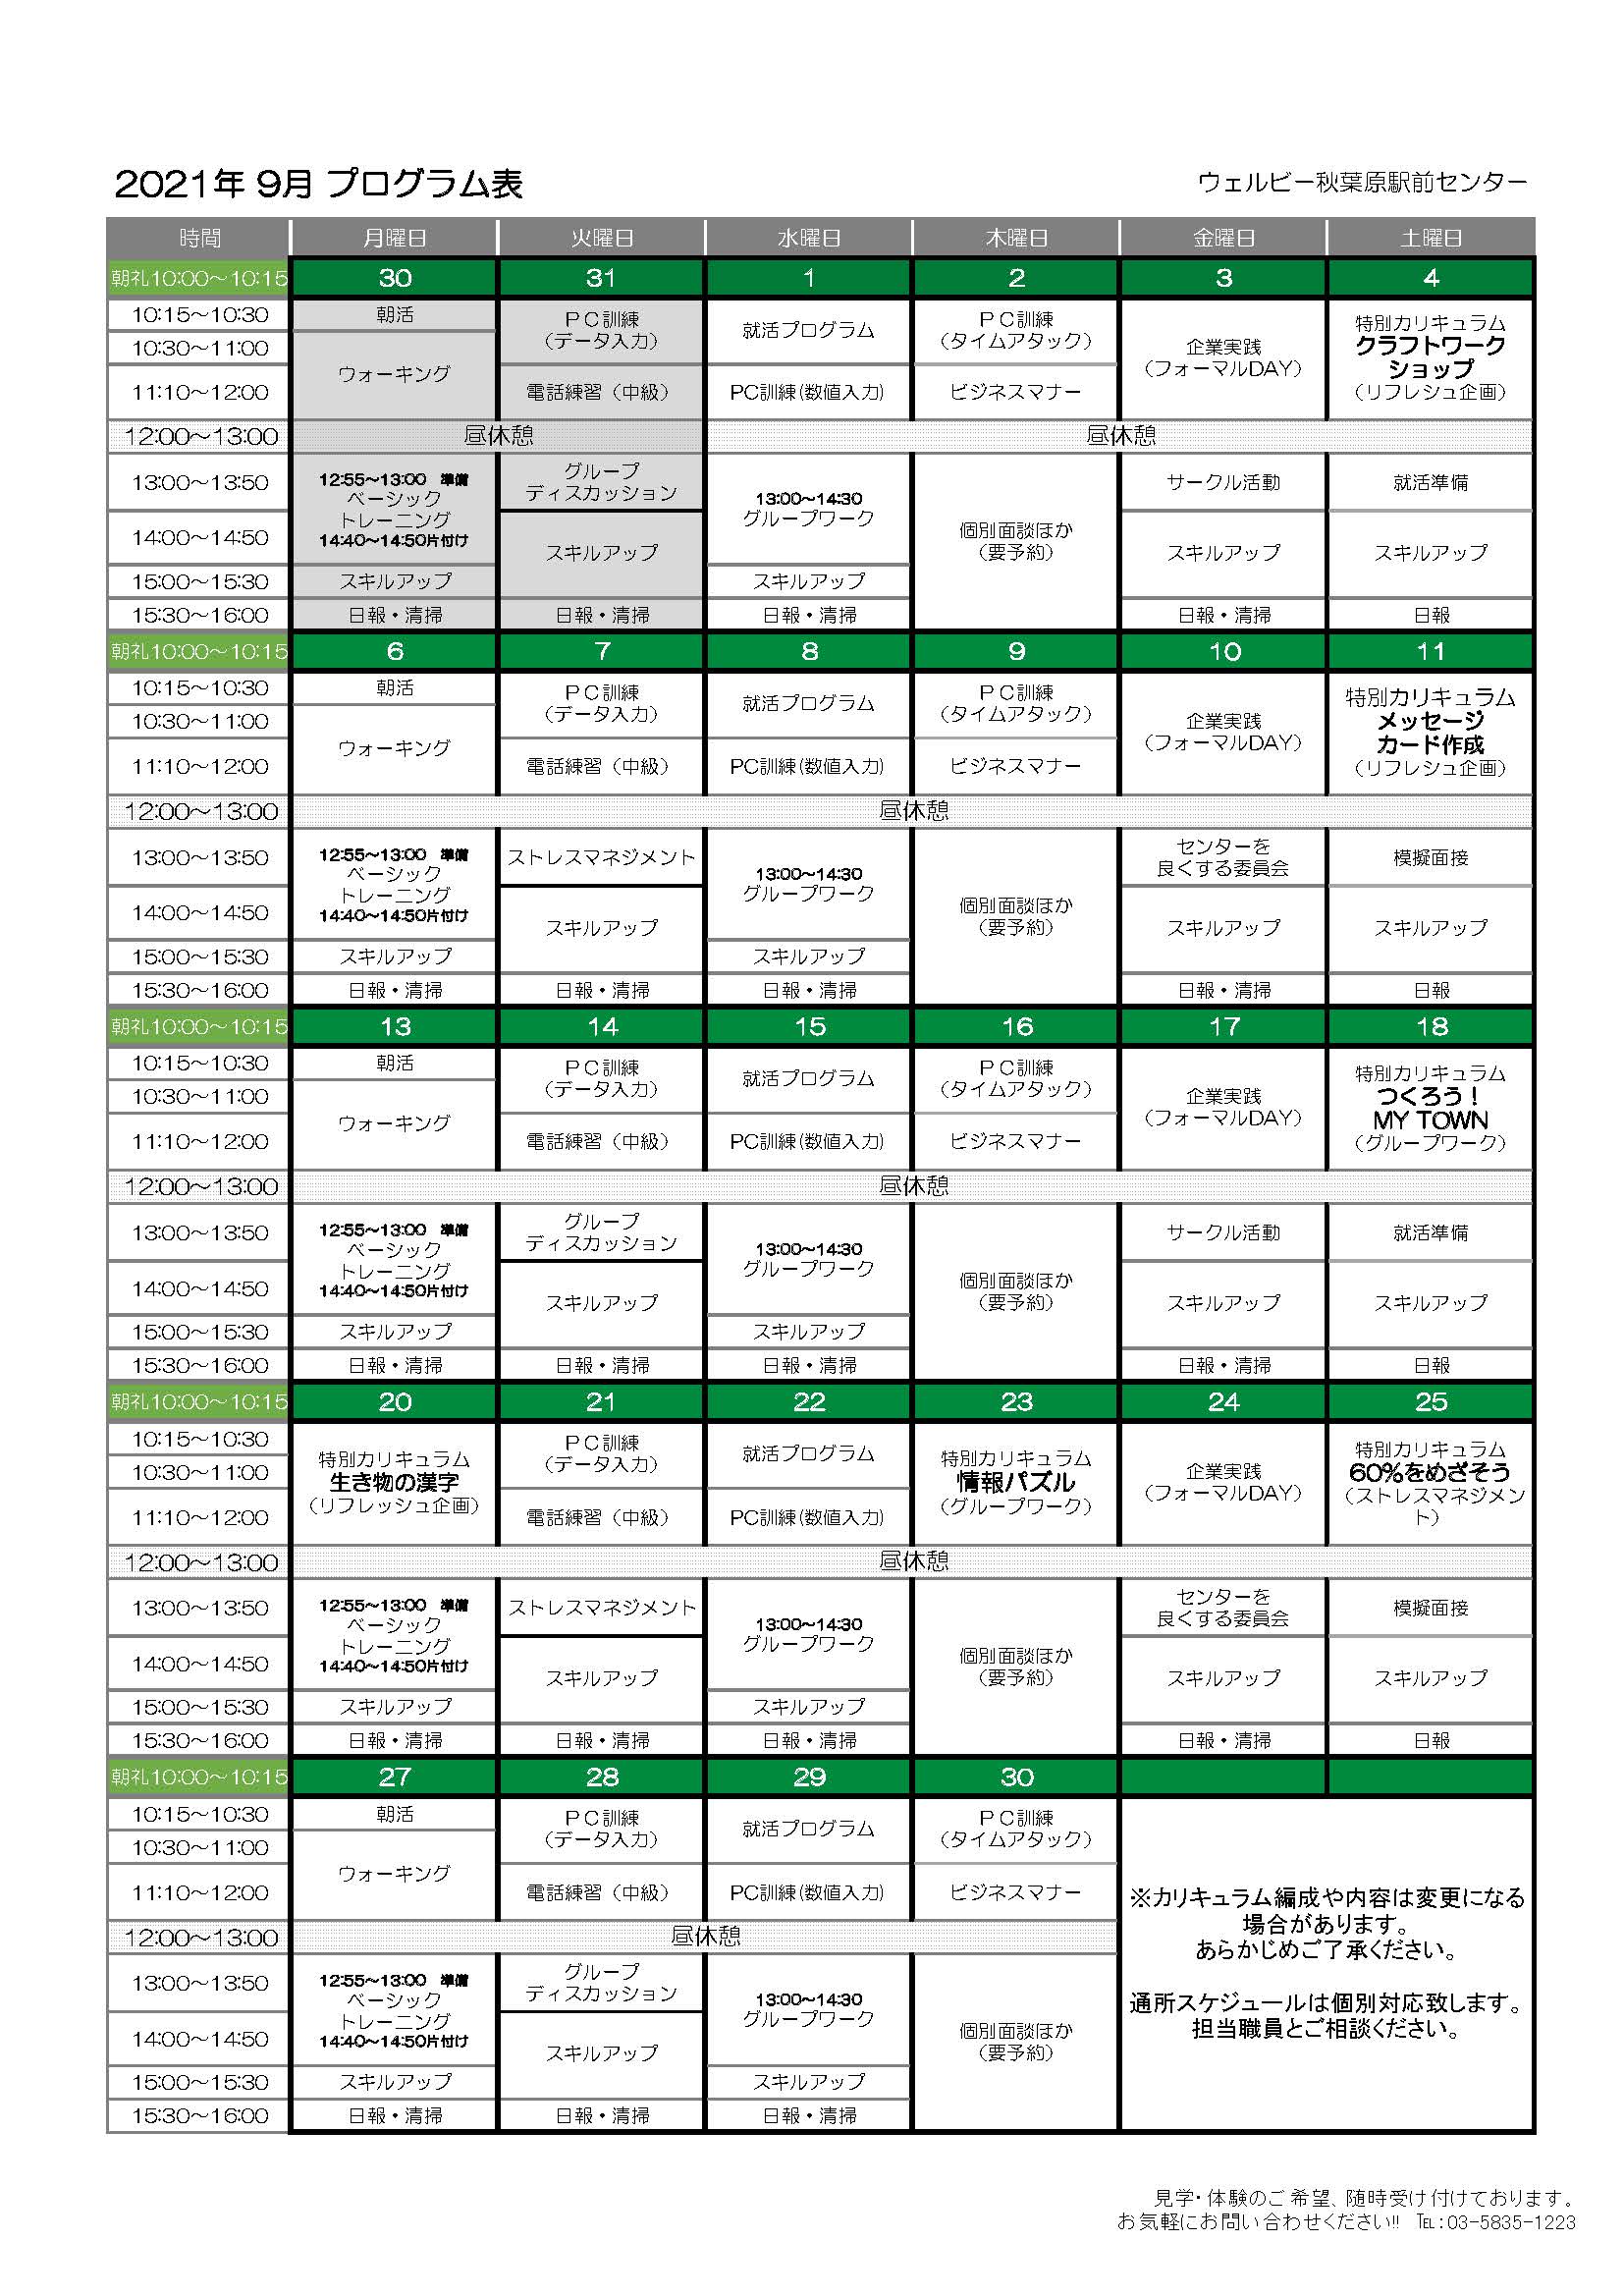 ウェルビー秋葉原駅前センター月間プログラム表(9月)